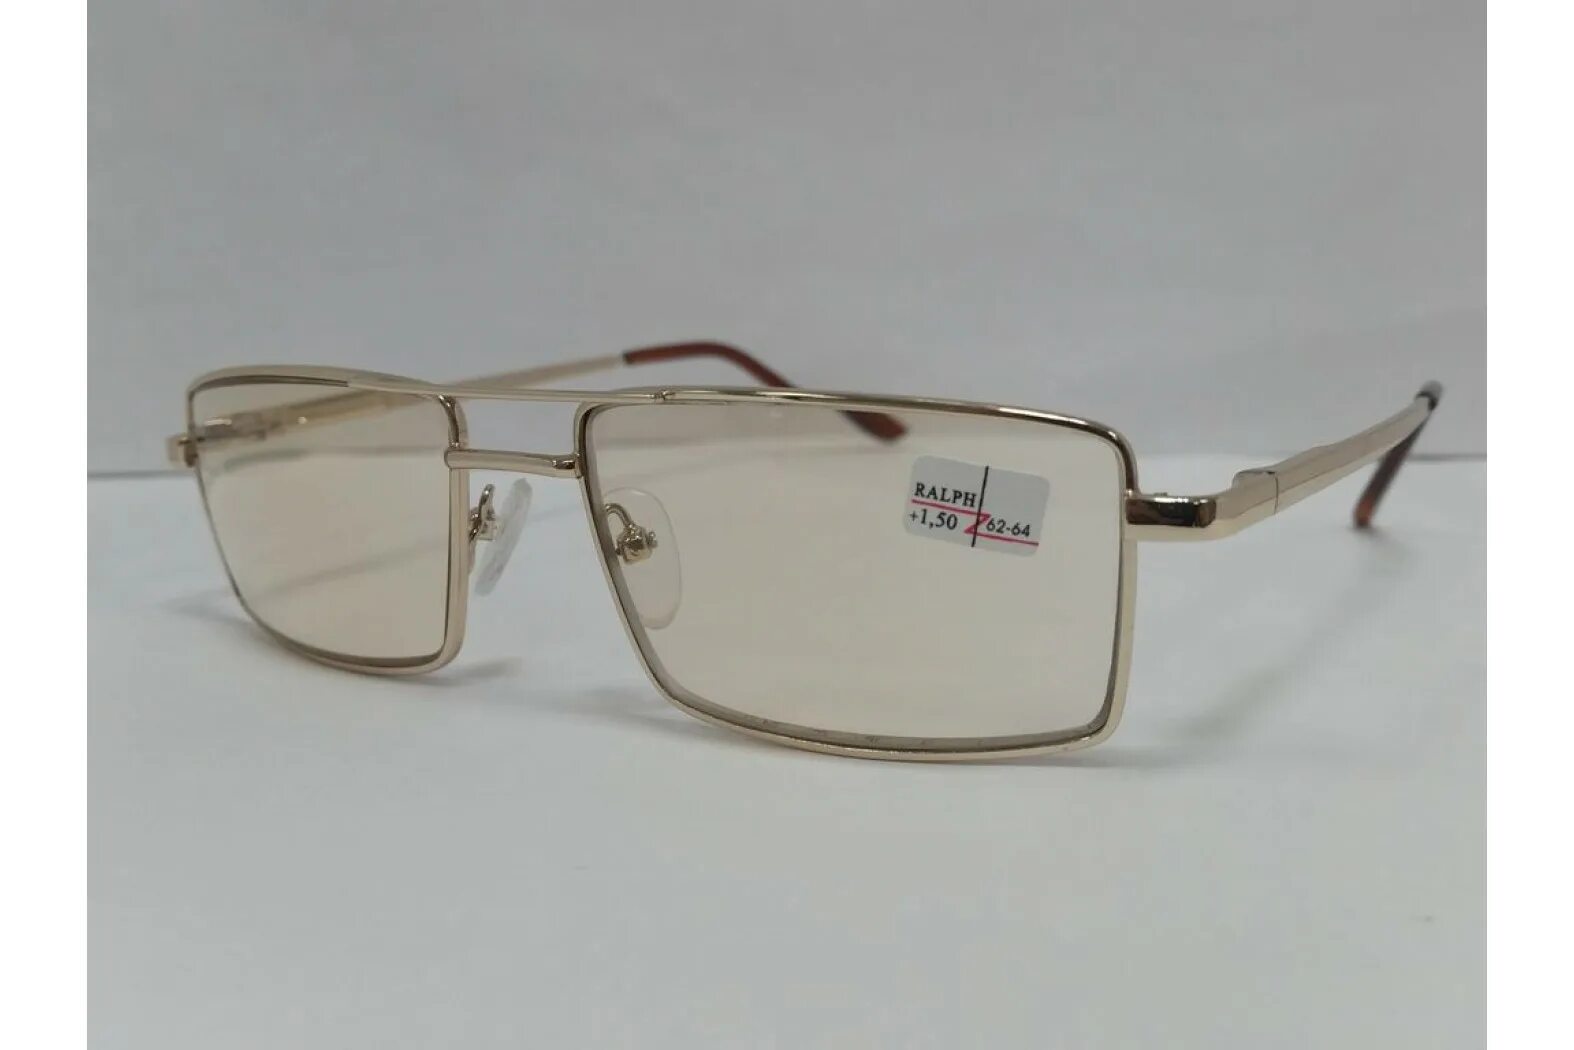 Лучшие очки хамелеоны. Очки Ральф для зрения тонированные. Очки хамелеоны фотохромные очки. Zen очки хамелеон 1900 h. Очки хамельны стекло 62-64мм.